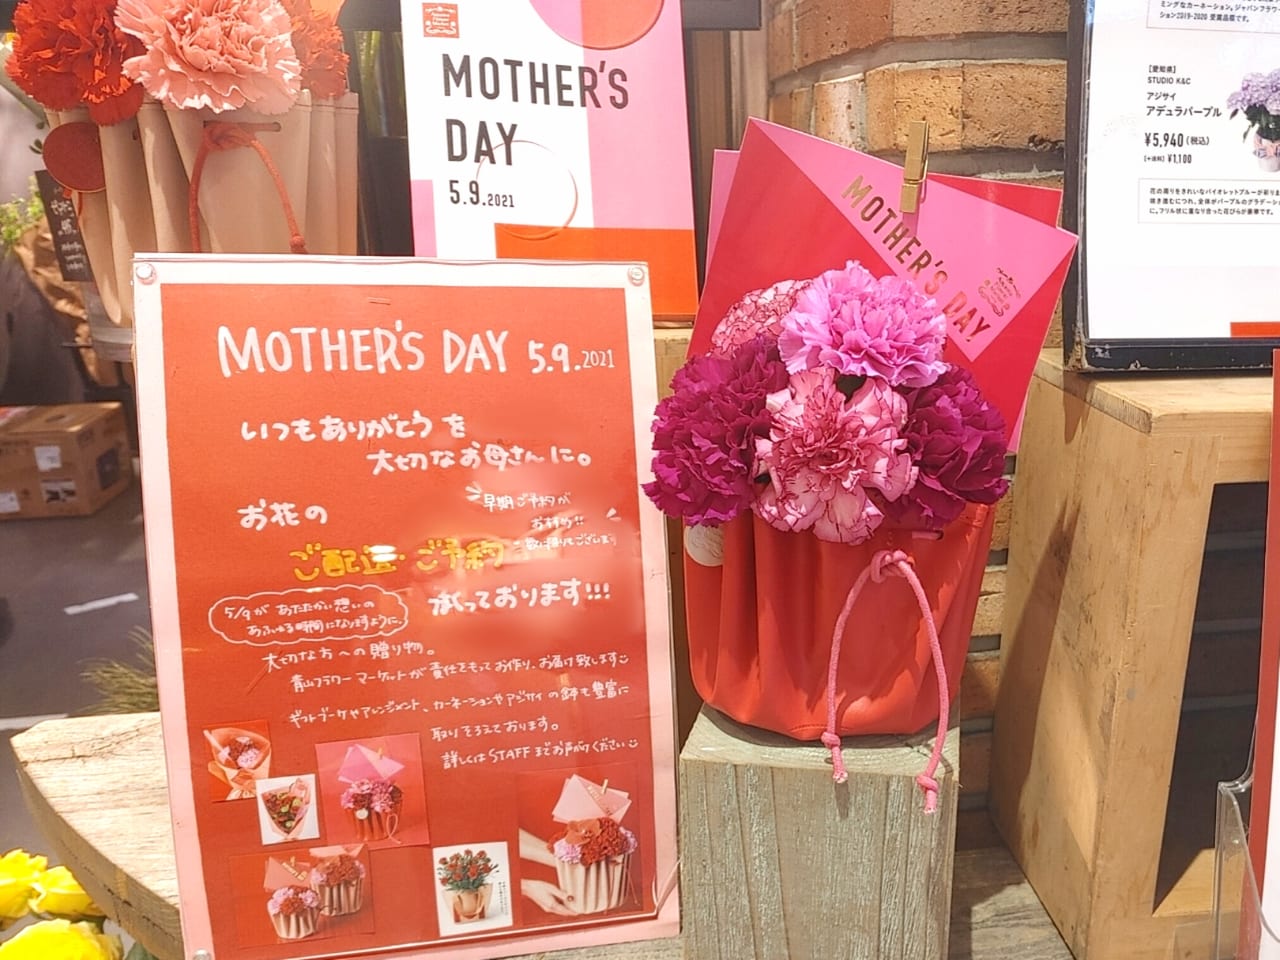 武蔵野市 21年は5月9日 母の日 まであと１ヶ月 お母さんに感謝を込めてお花を贈りましょう 青山フラワーマーケット のおしゃれなギフトをチェック 号外net 武蔵野市 小金井市